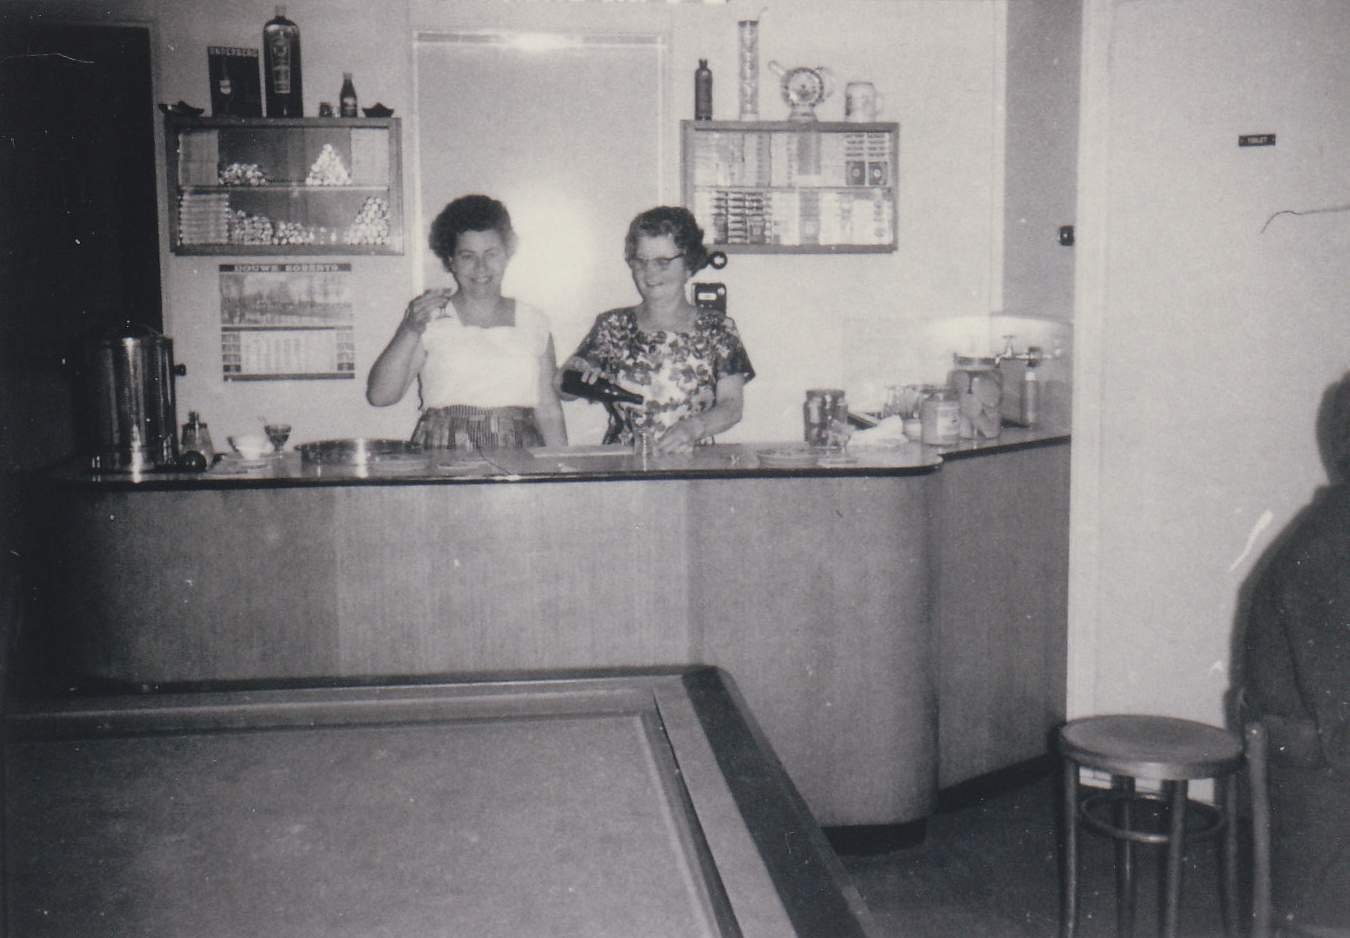 021-173 - Industrieweg - Cafe van Zessen - 1956.jpg